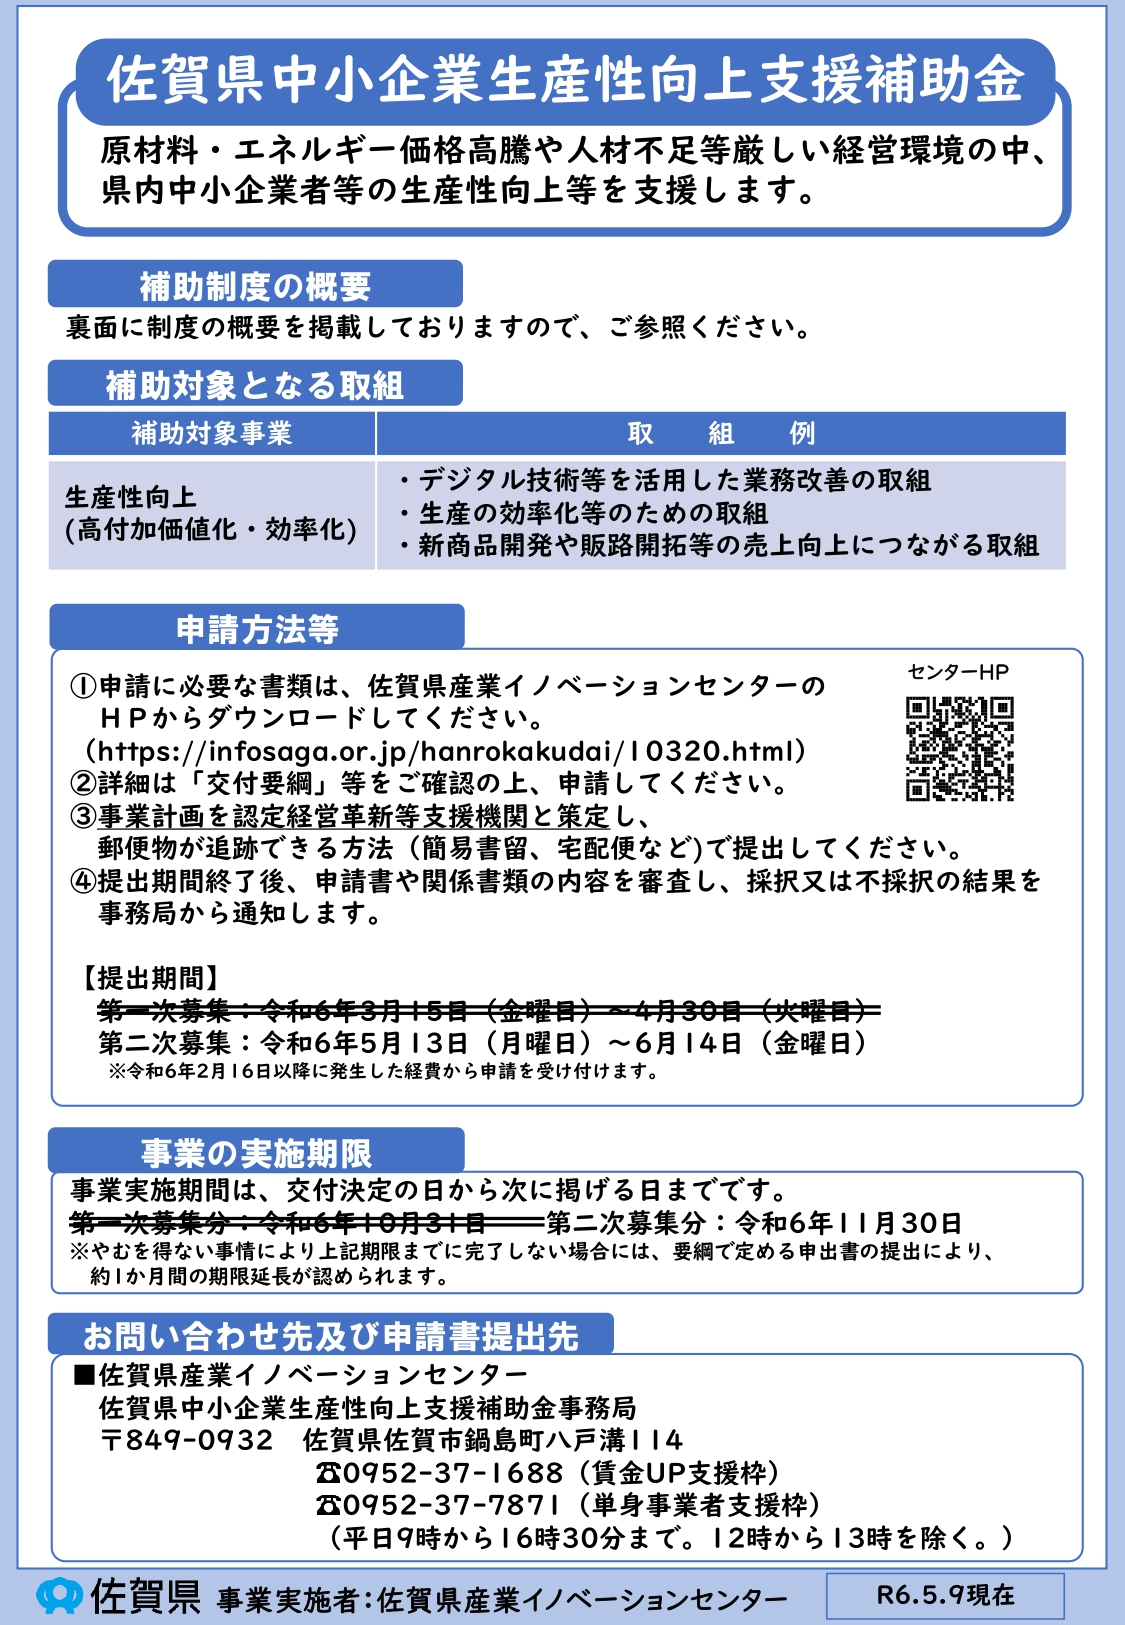 佐賀県中小企業生産性向上支援補助金（第2次募集）の公募開始のお知らせ